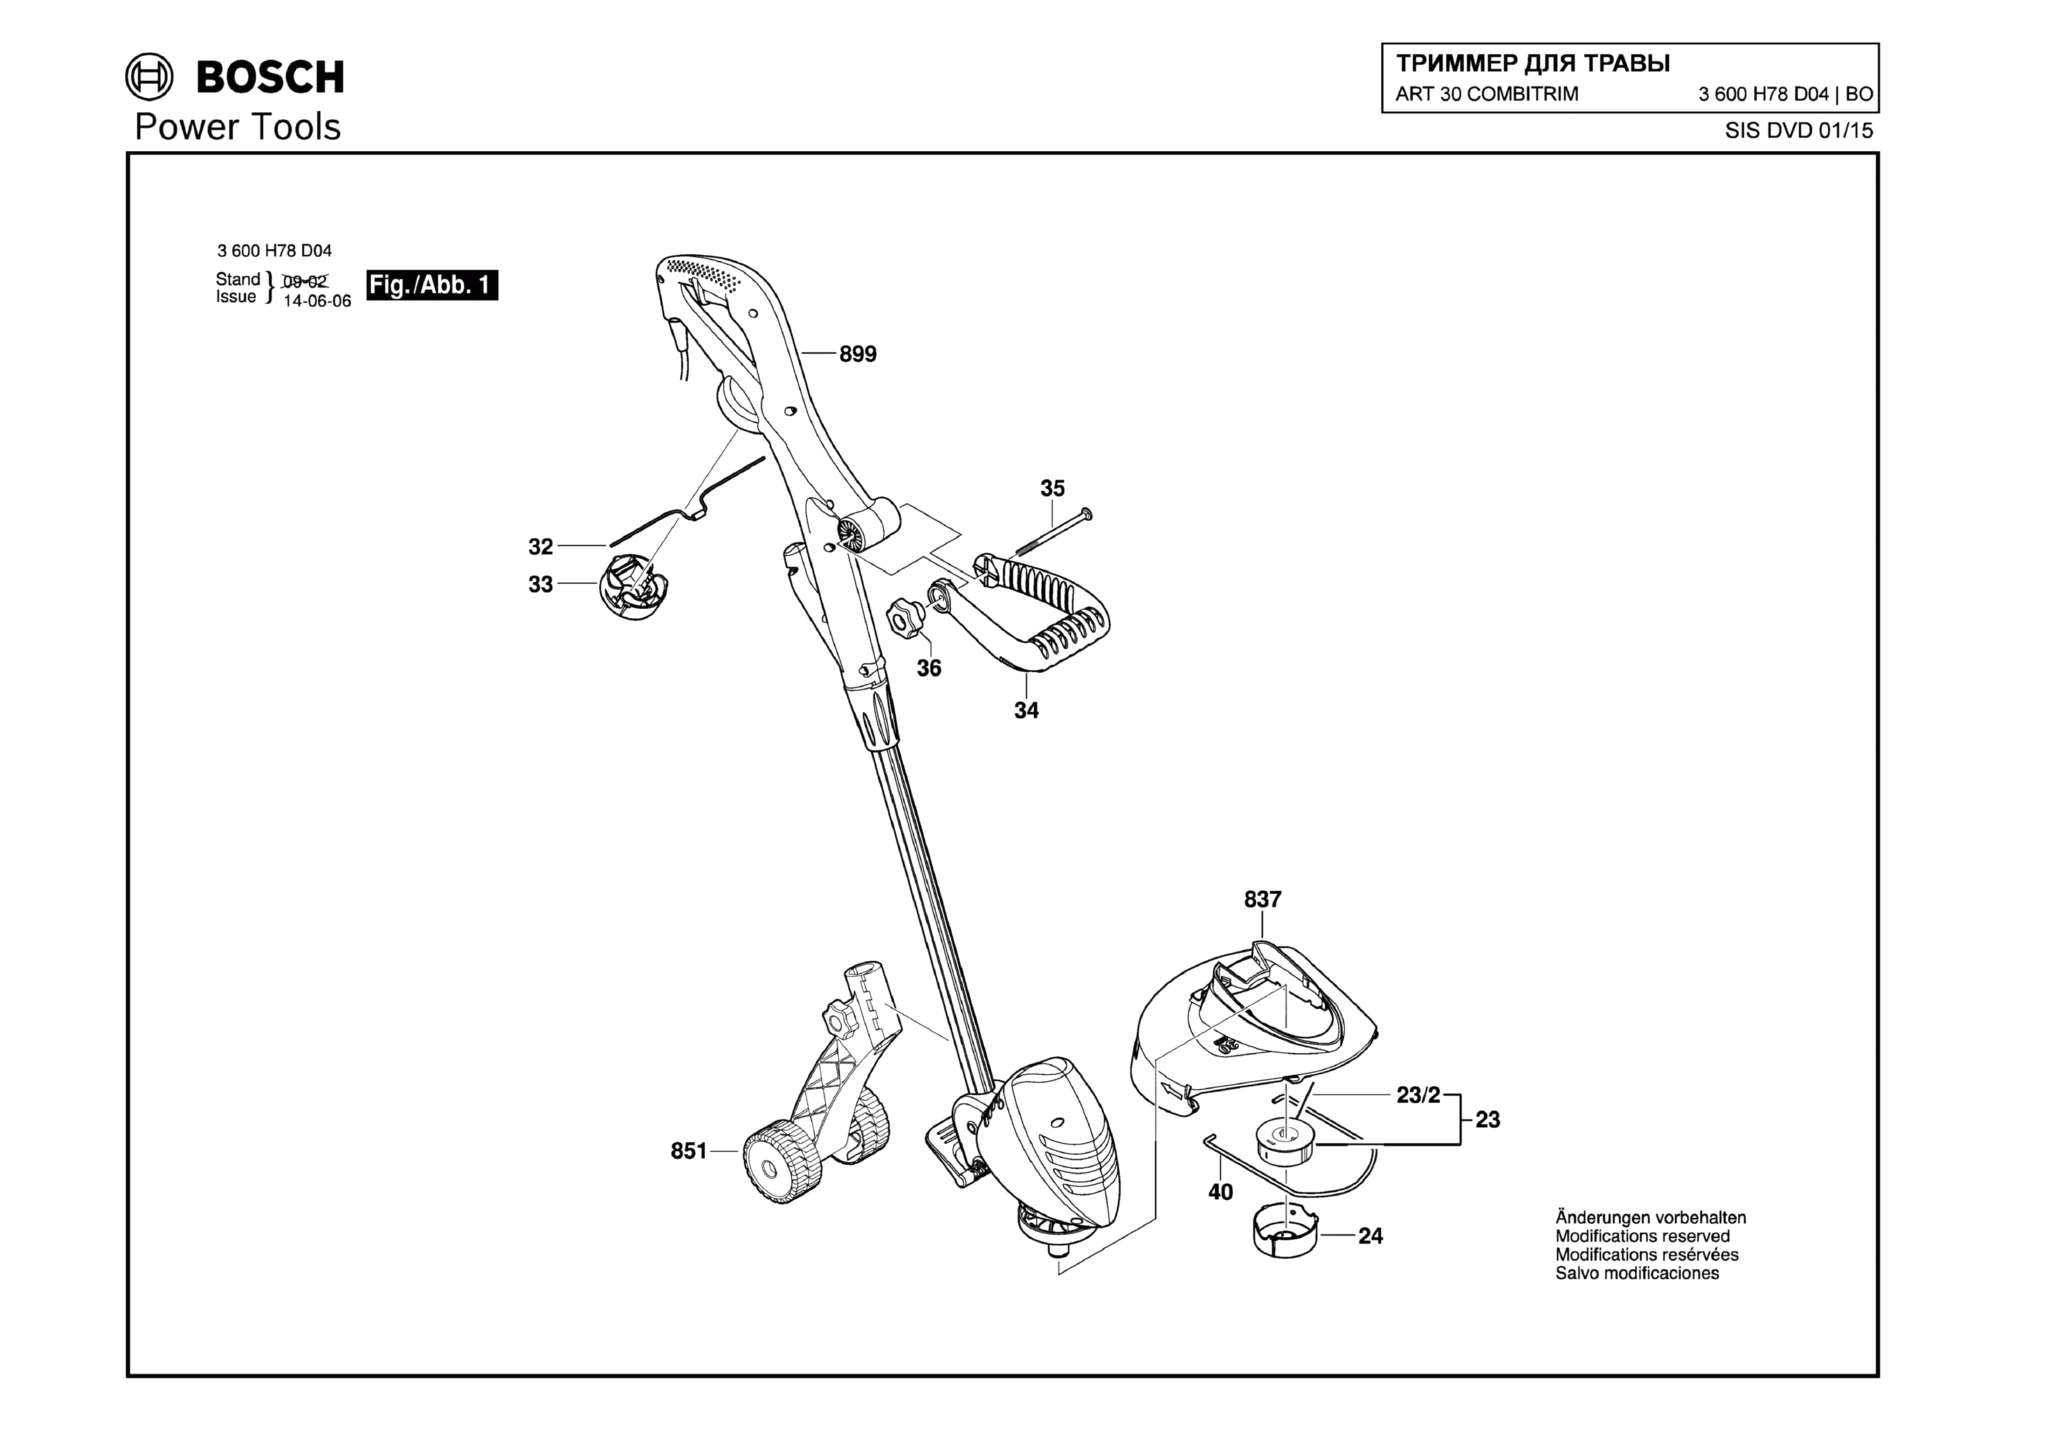 Запчасти, схема и деталировка Bosch ART 30 COMBITRIM (ТИП 3600H78D04)